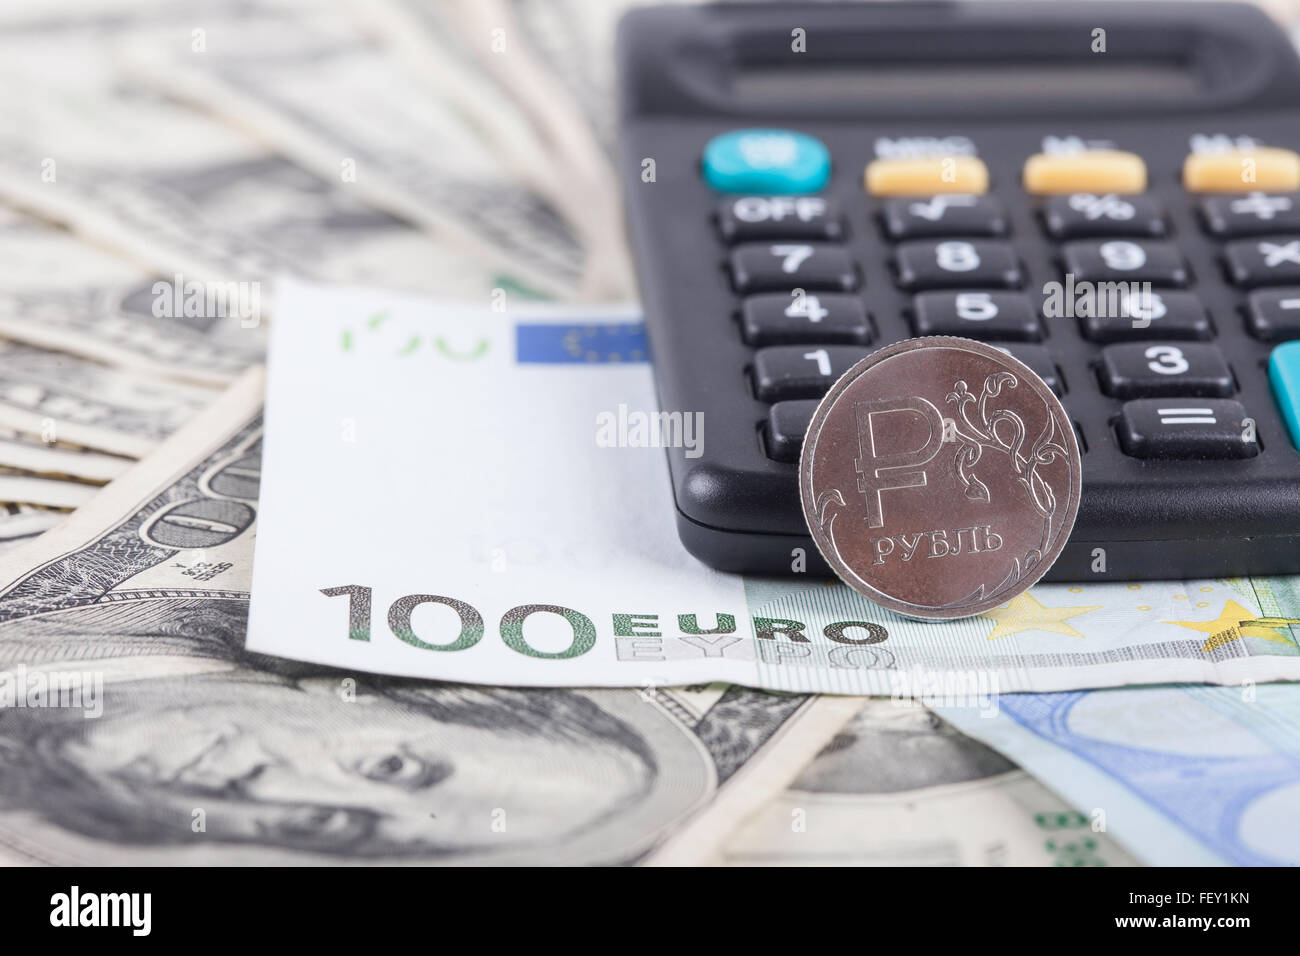 Calculatrice et billets de dollars, euros contexte Banque D'Images